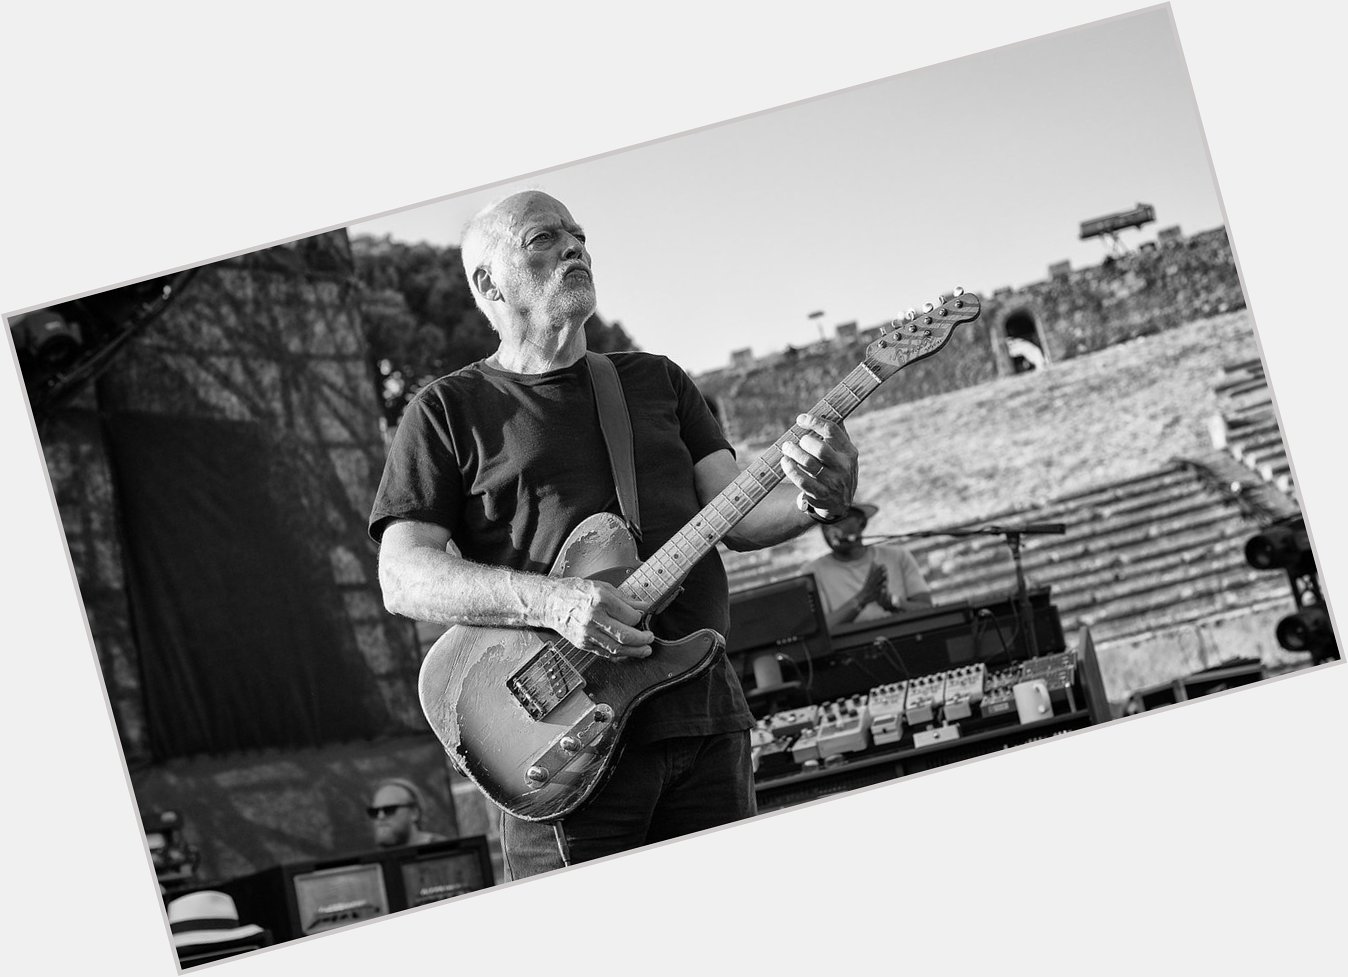 David Gilmour, Happy Bday!
Cheers   